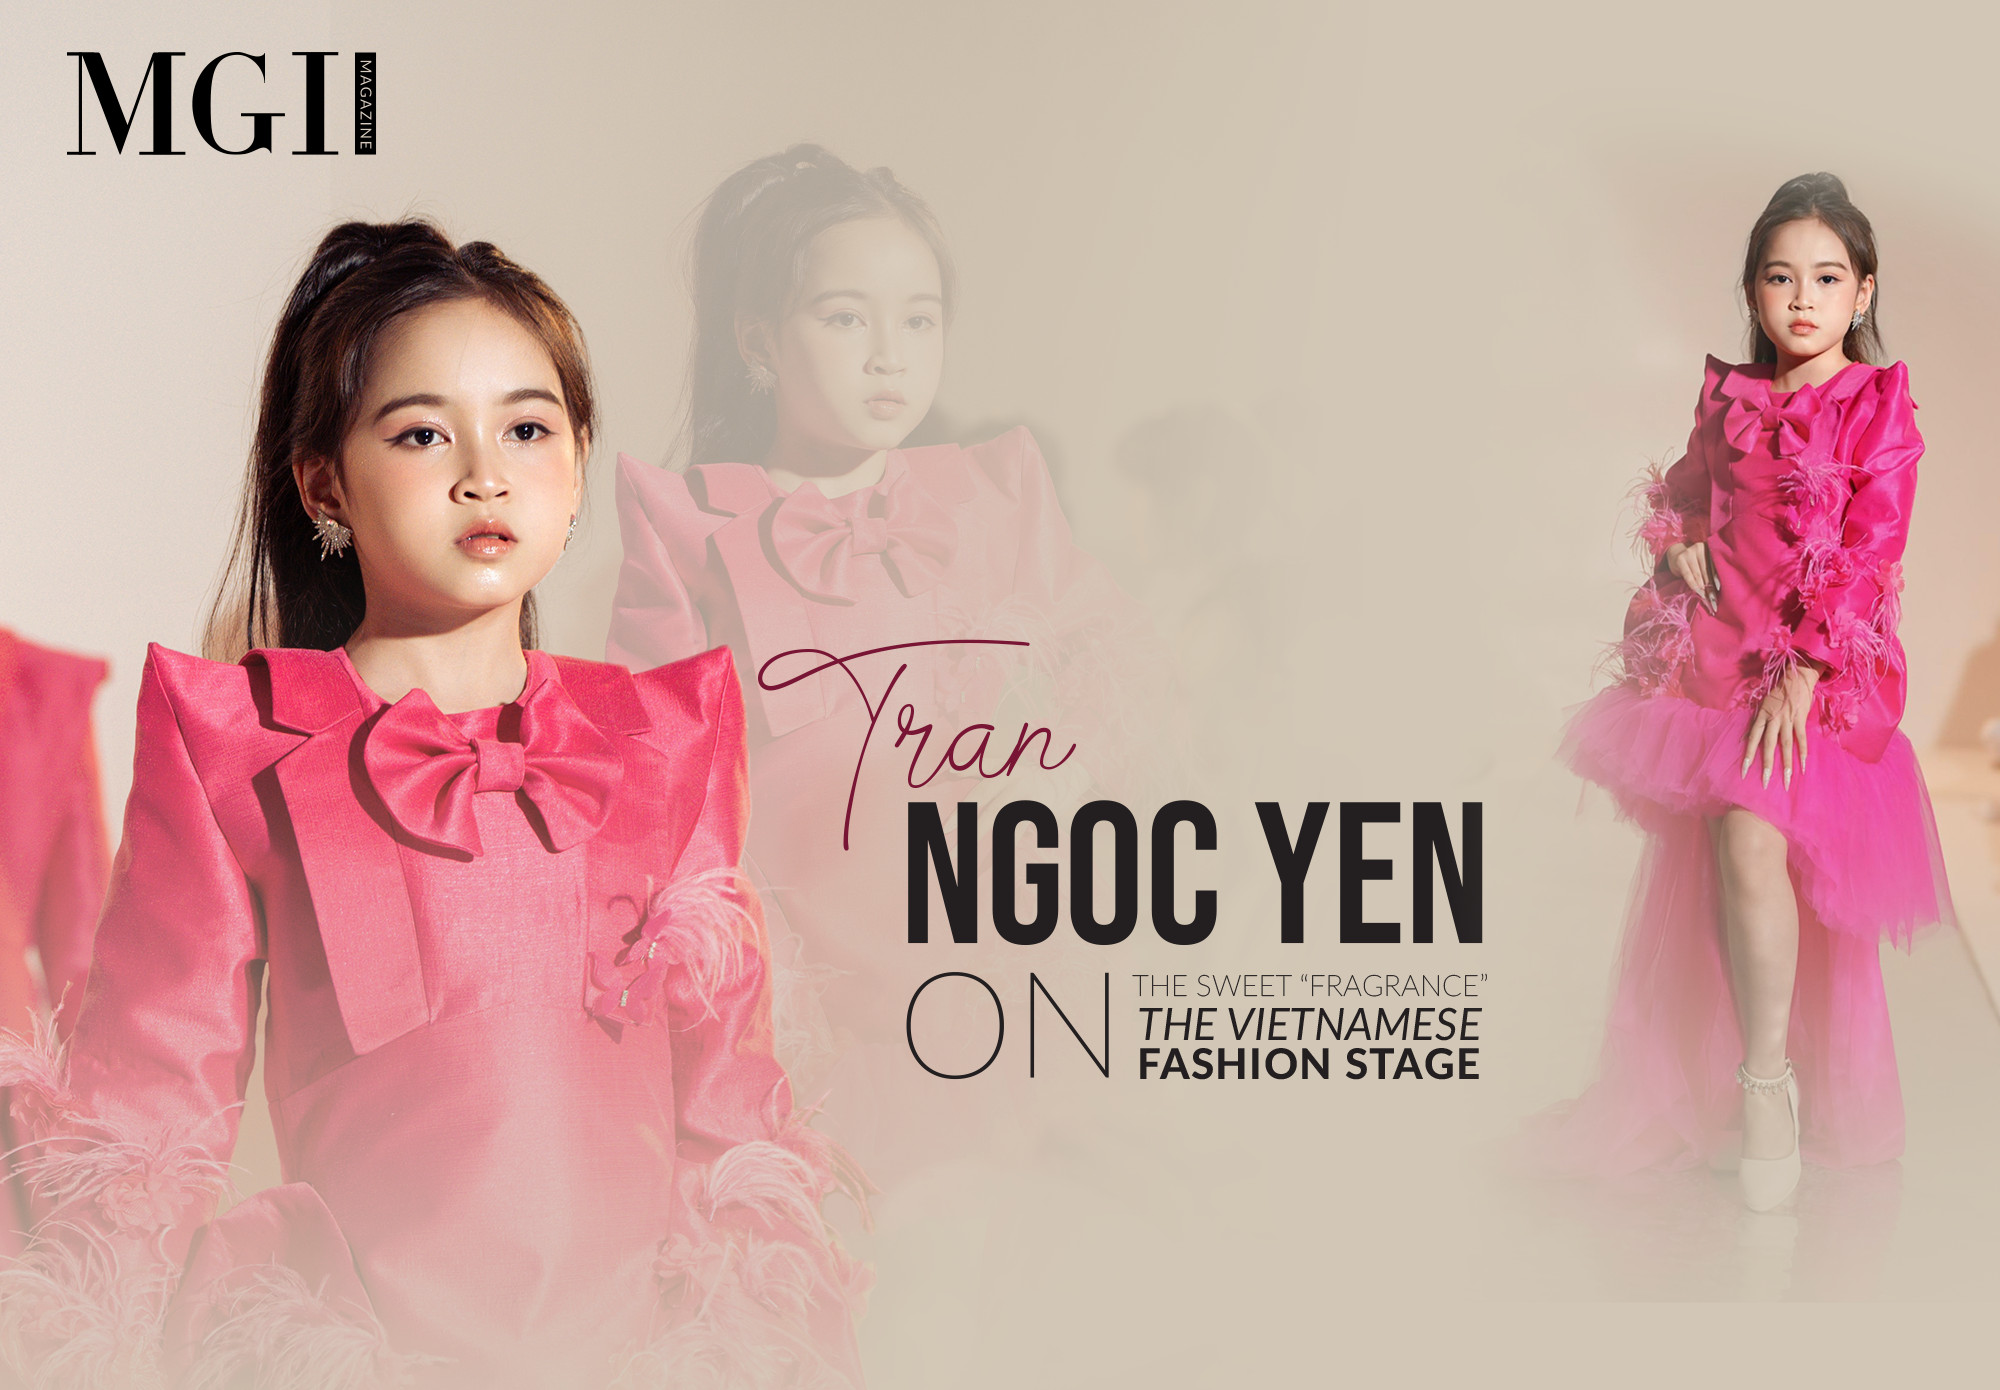 E-magazine | Tran Ngoc Yen - the sweet “fragrance” on the Vietnamese fashion stage